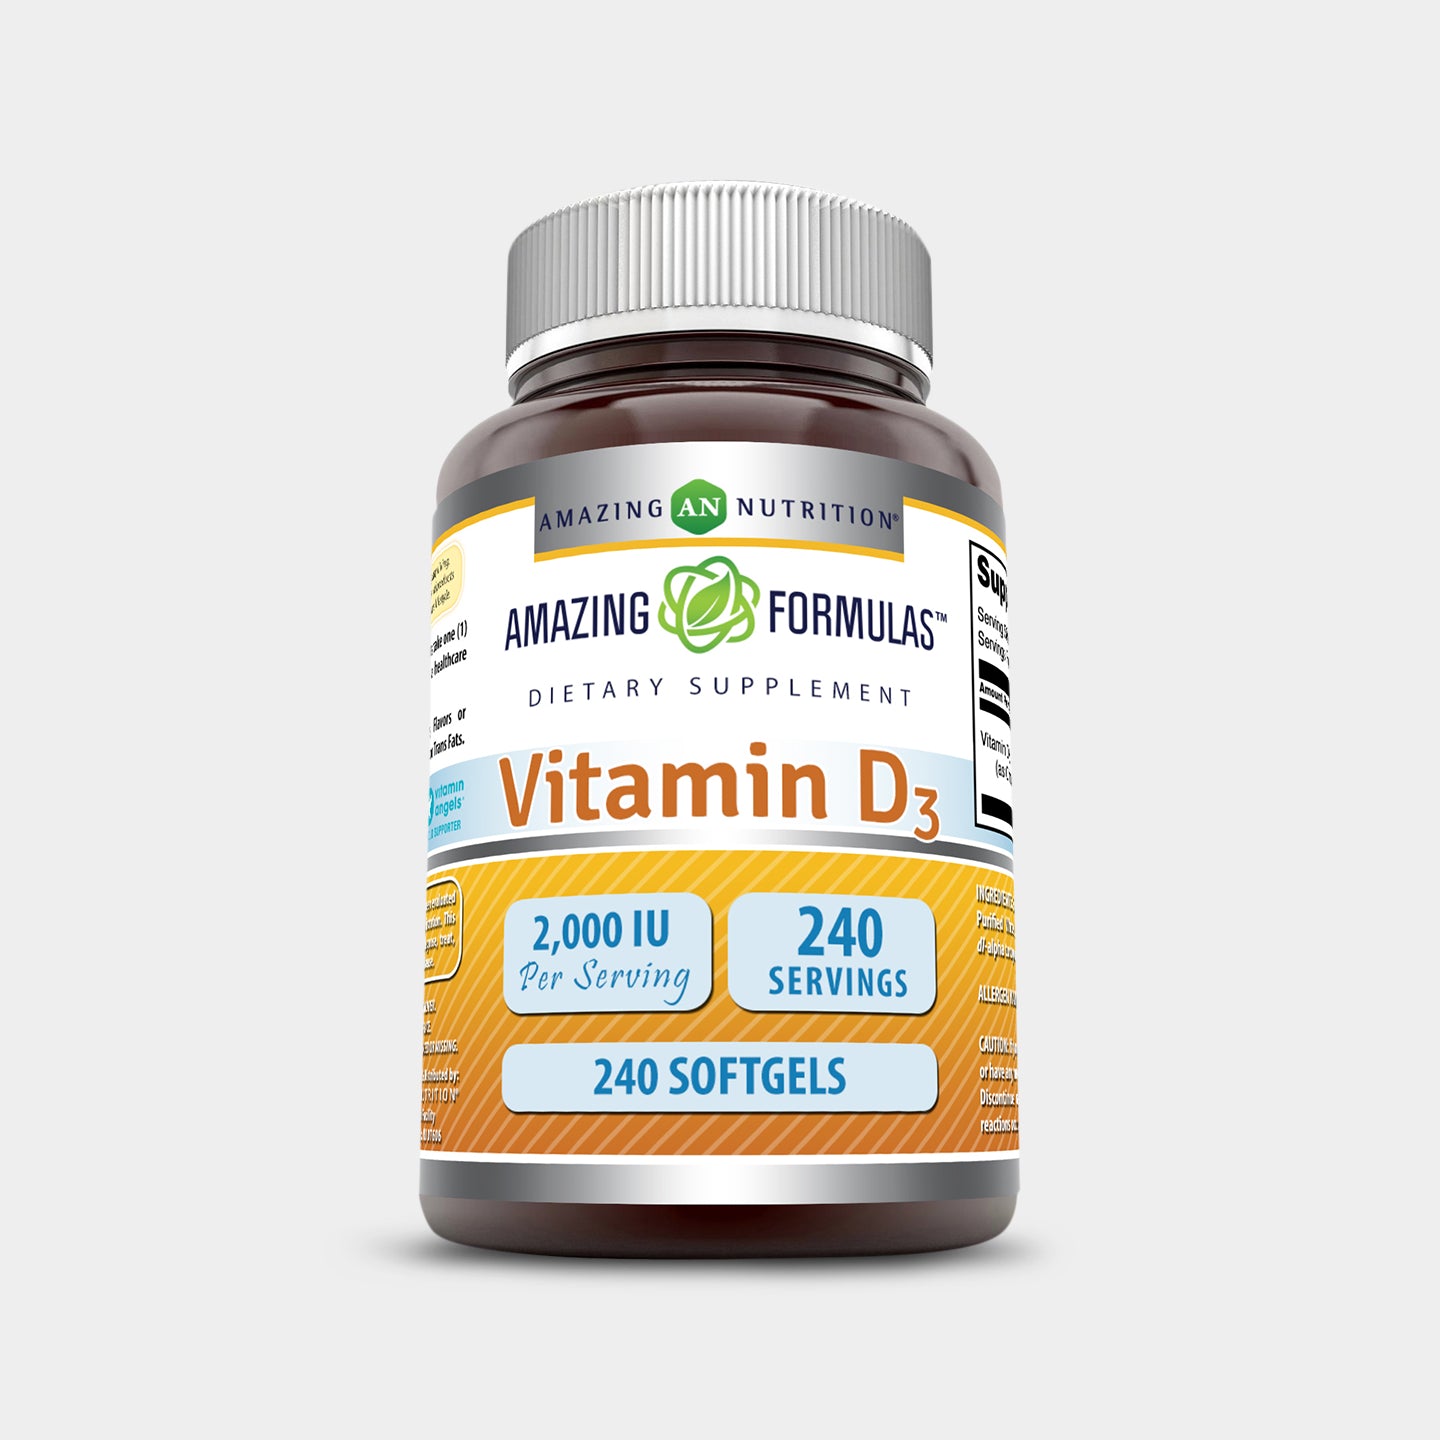 Amazing Formulas Vitamin D3 2000 IU A1